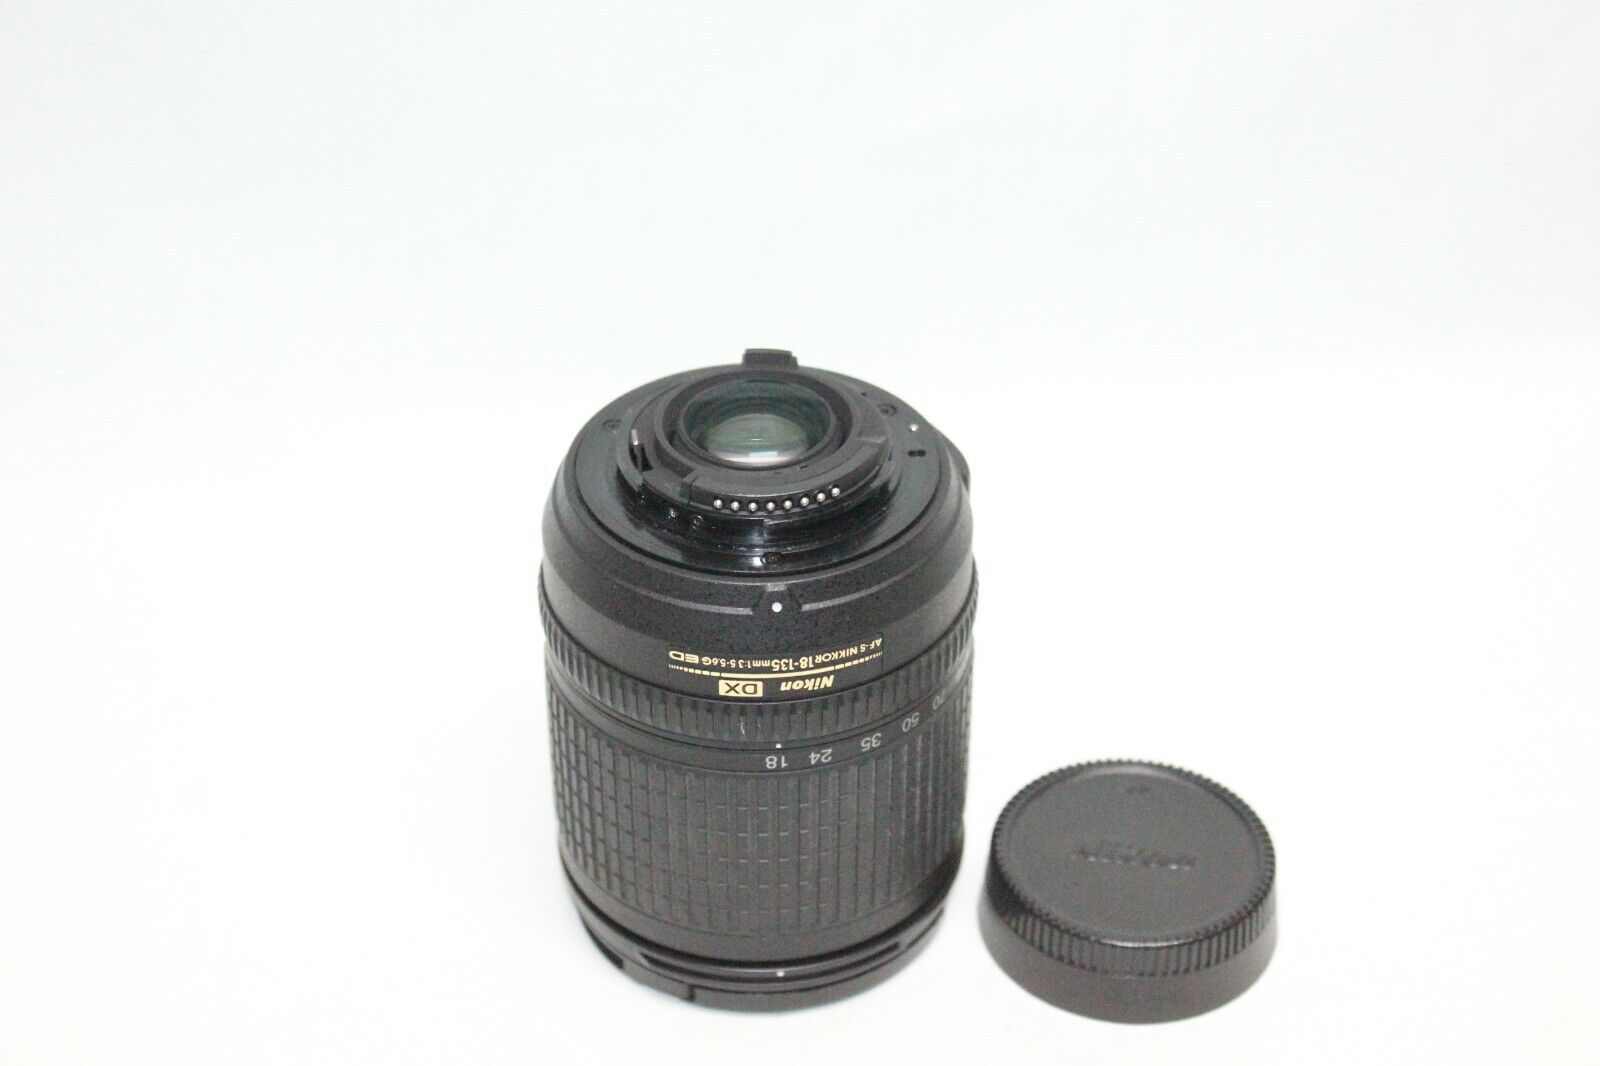 Nikon AF-S DX 18-135mm f3.5-5.6G IF-ED zoom lens